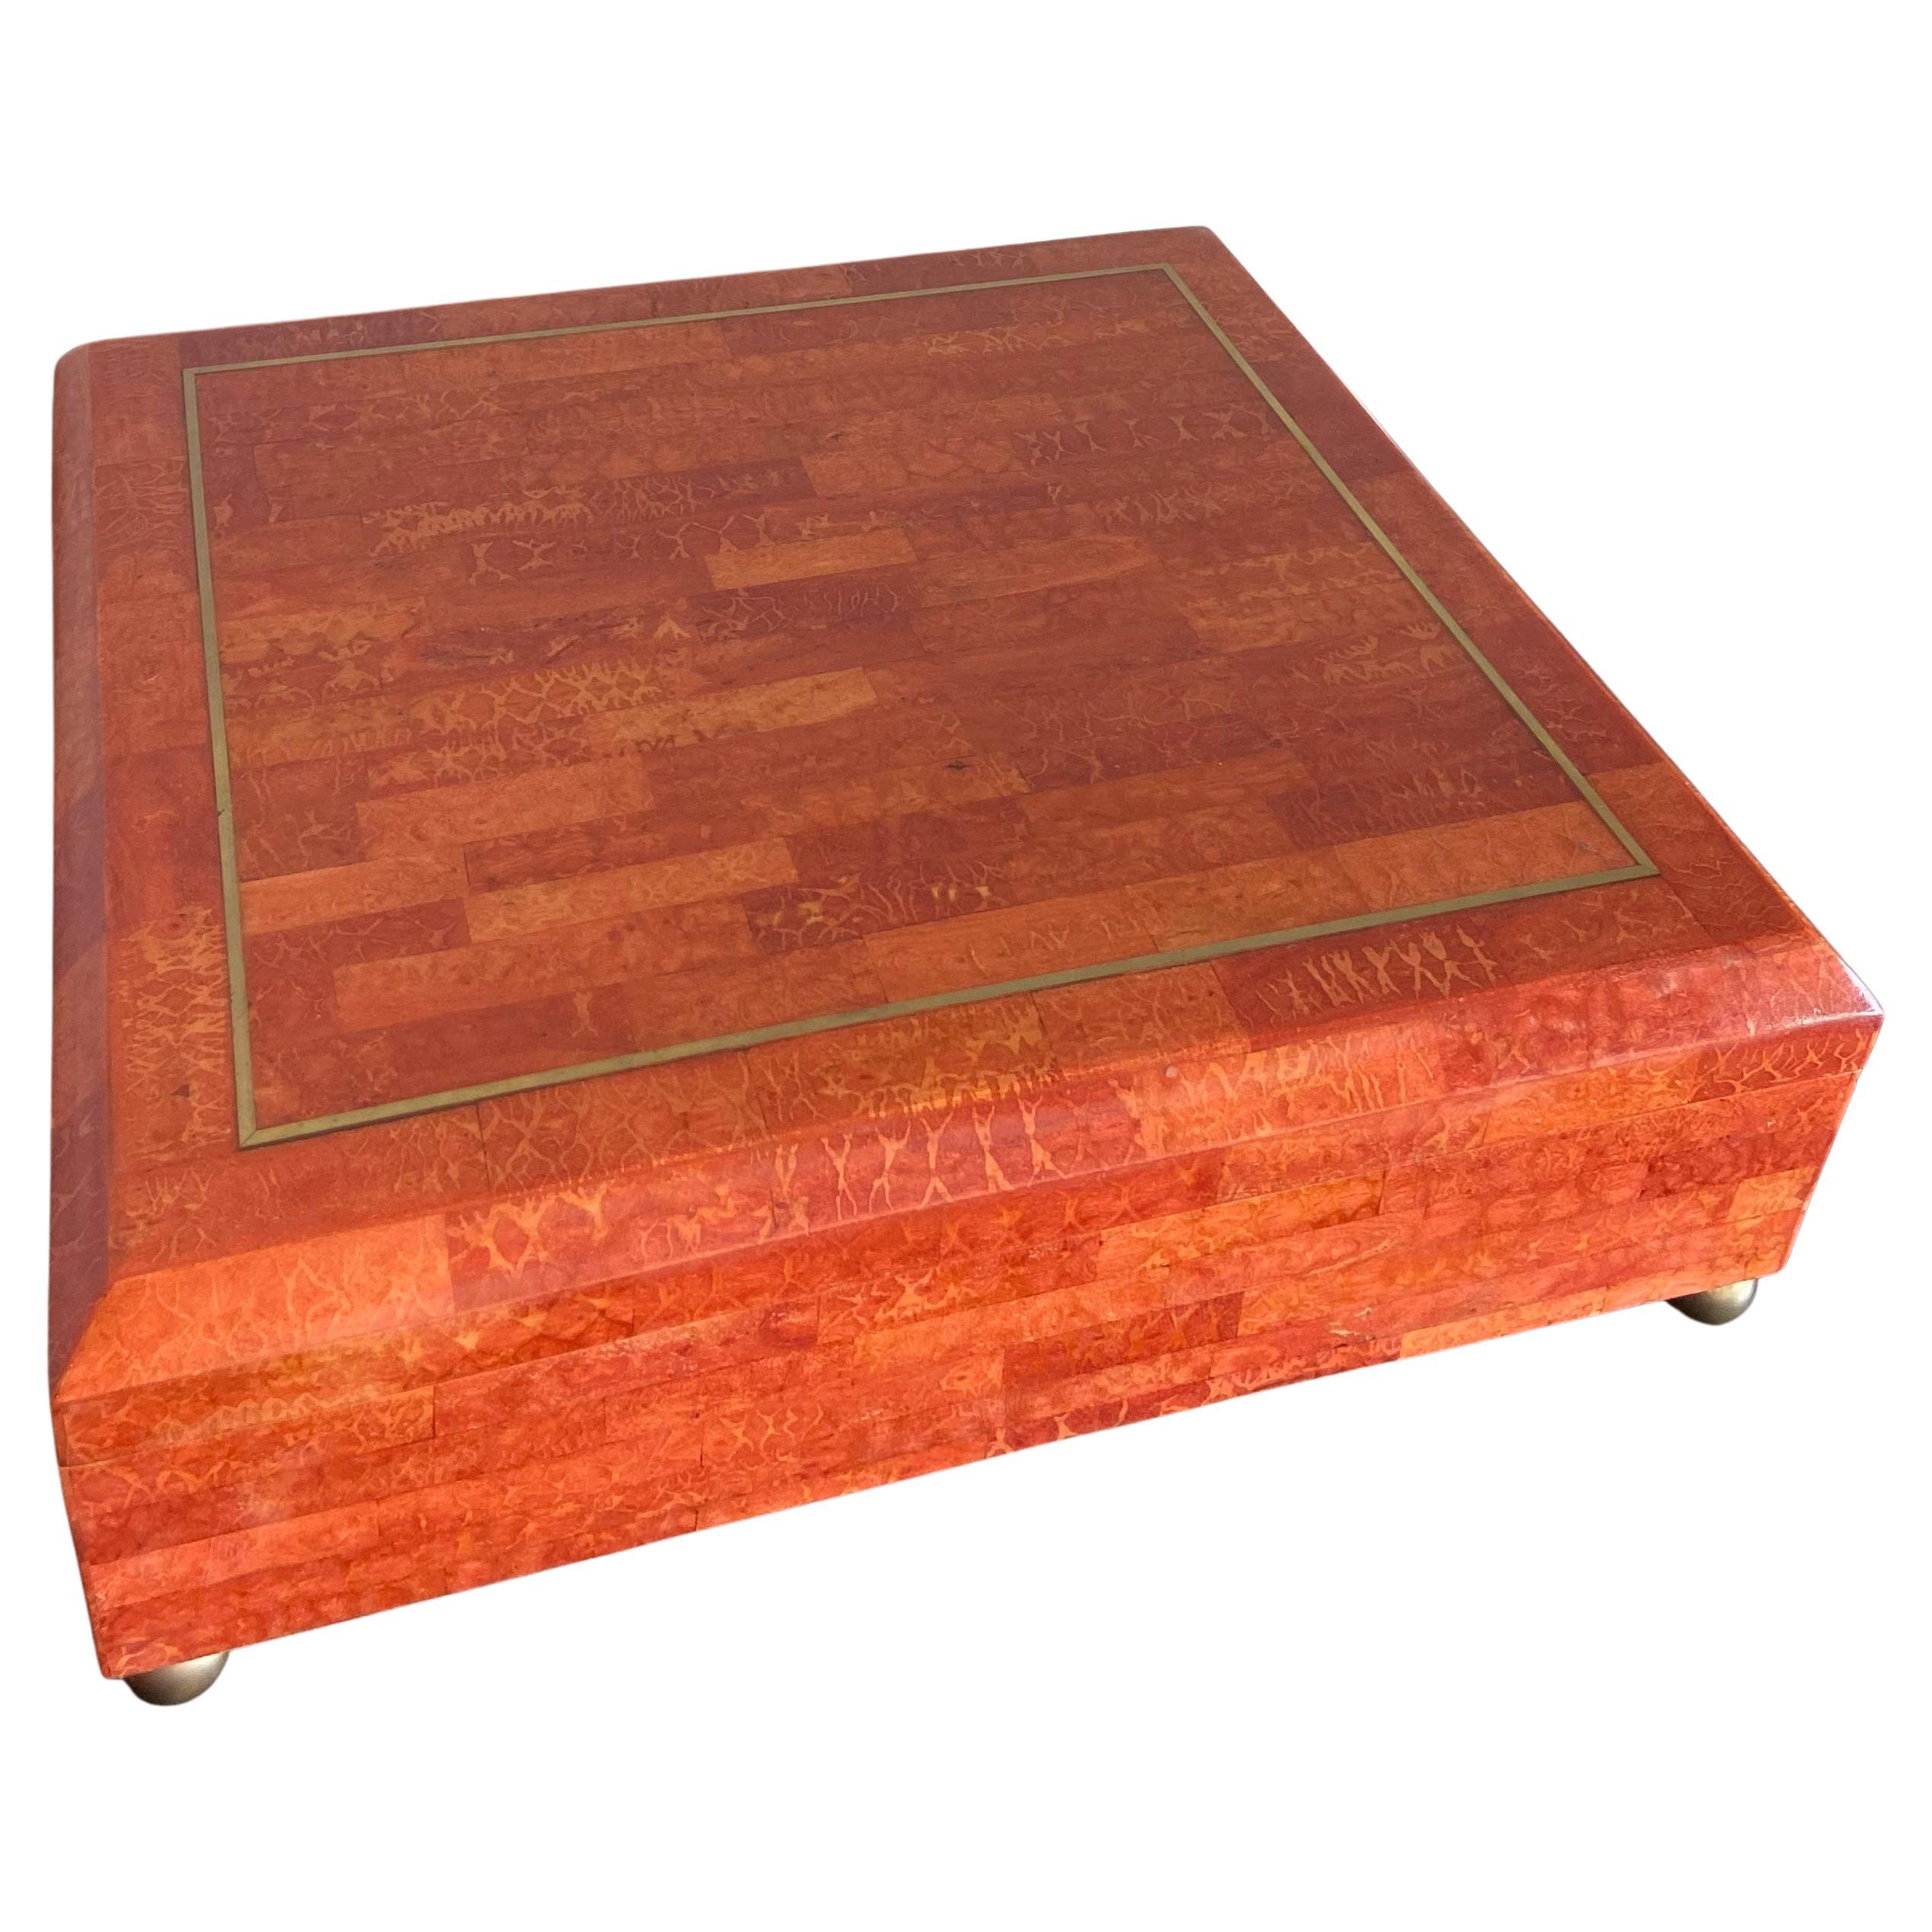 Velvet Lined Boxes - 253 For Sale on 1stDibs  velvet lined wooden box, velvet  lined storage boxes, velvet lined jewelry box